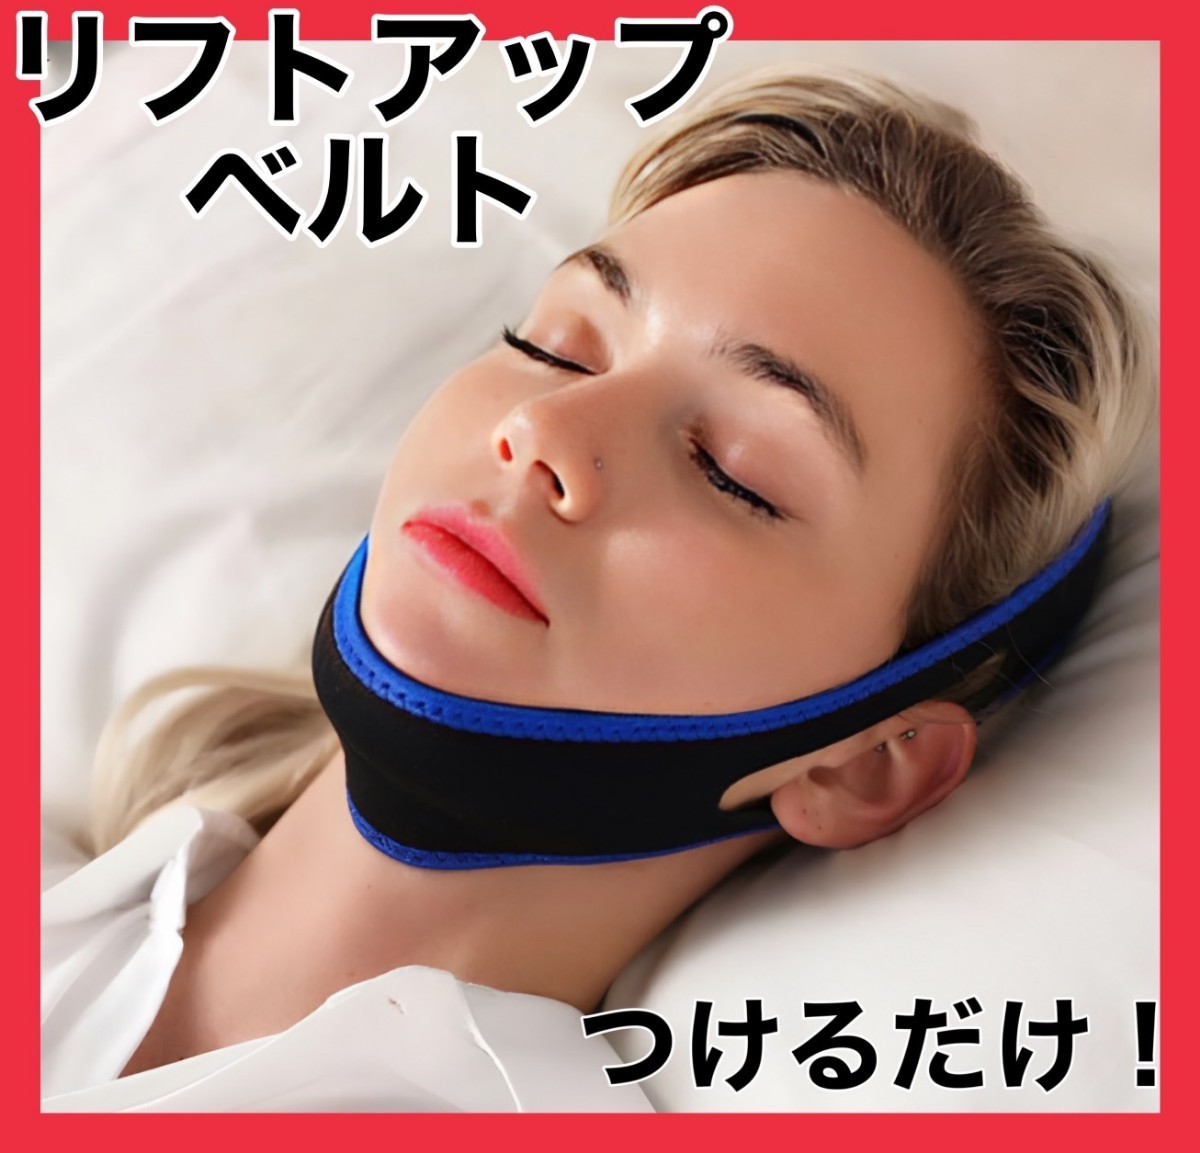 サポーター あご 快眠 いびき防止 小顔効果 睡眠 快適 フェイス サポート リフトアップ 小顔矯正 二重あご むくみ解消 たるみ 